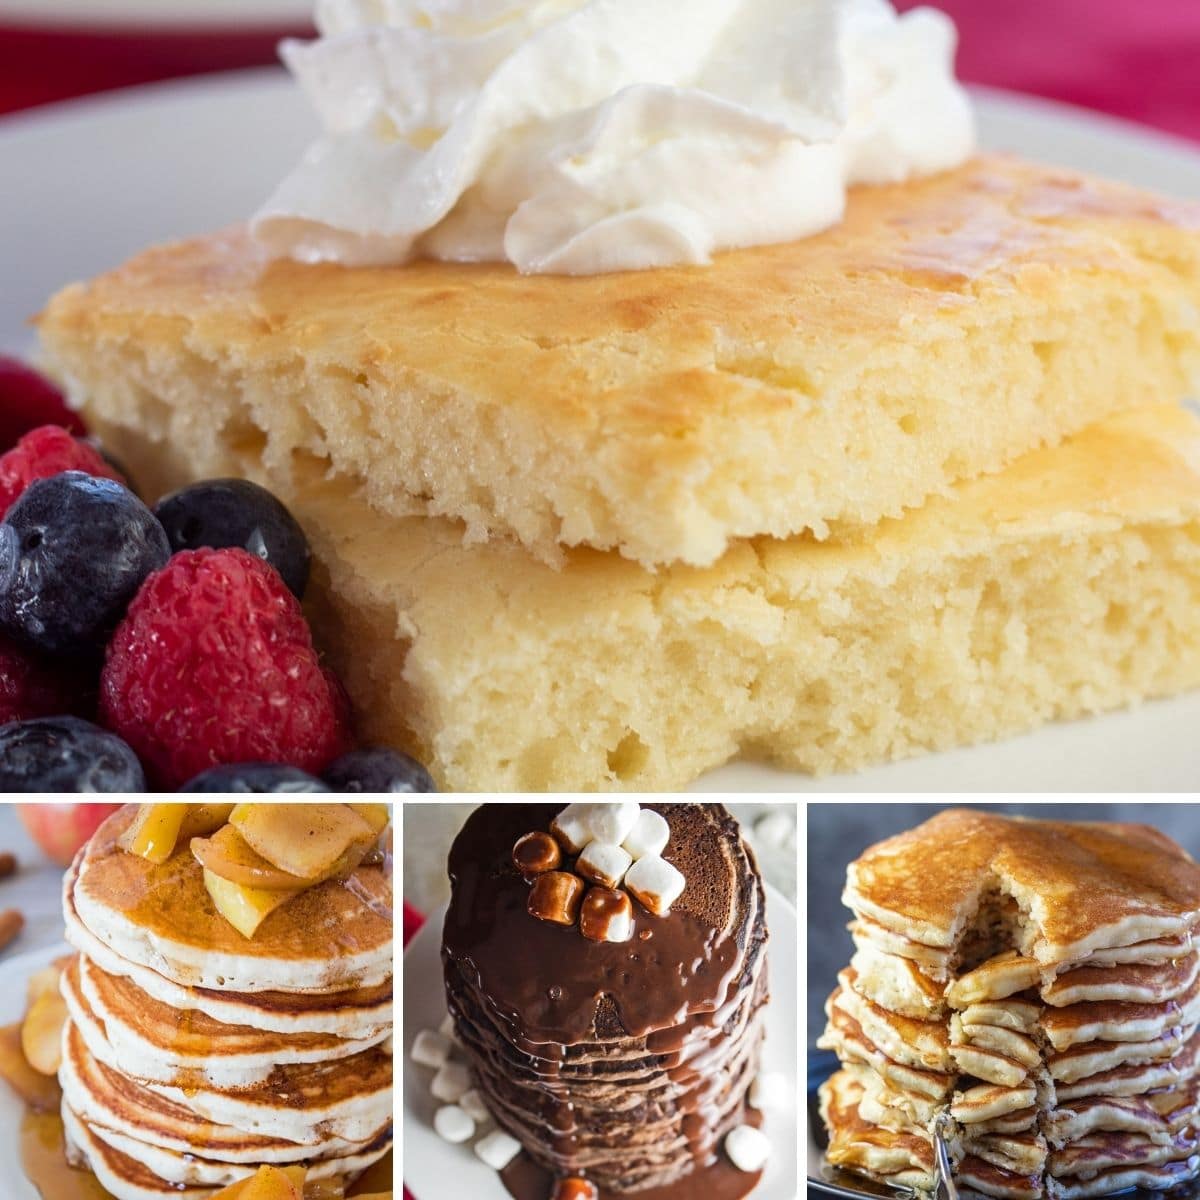 La mejor imagen de collage de recetas de panqueques de 4 recetas que compartimos para un increíble desayuno de fin de semana.